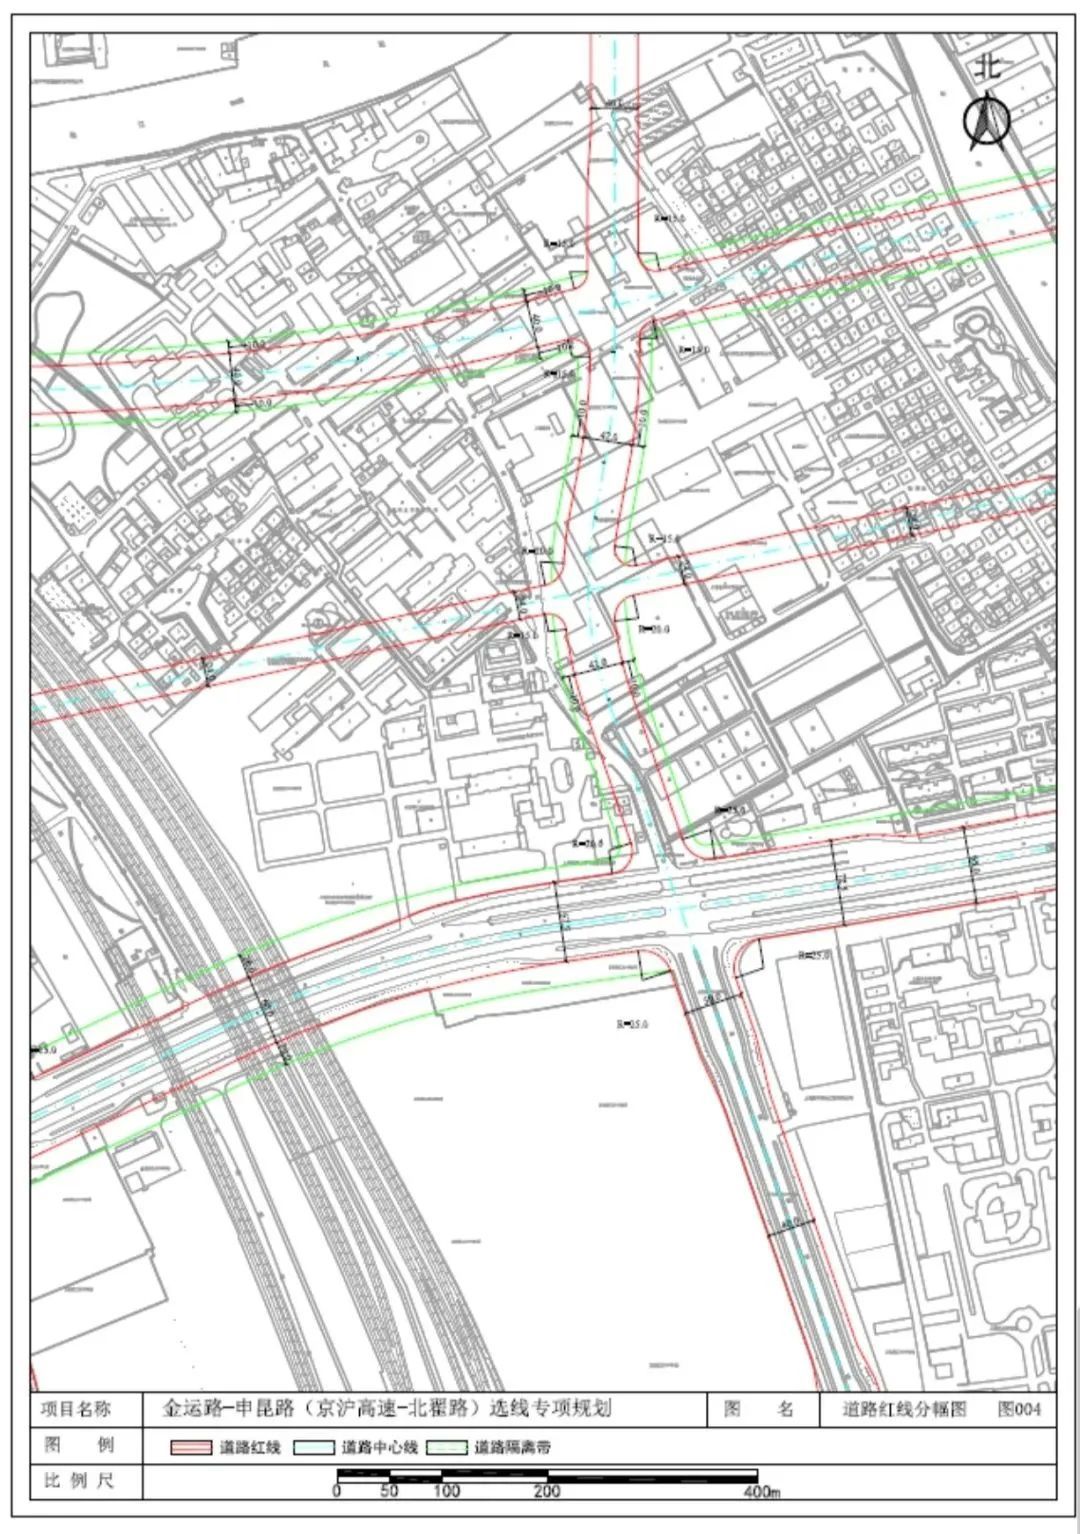 道路红线规划(图4)  (来源:嘉定区规划资源局,上海嘉定)